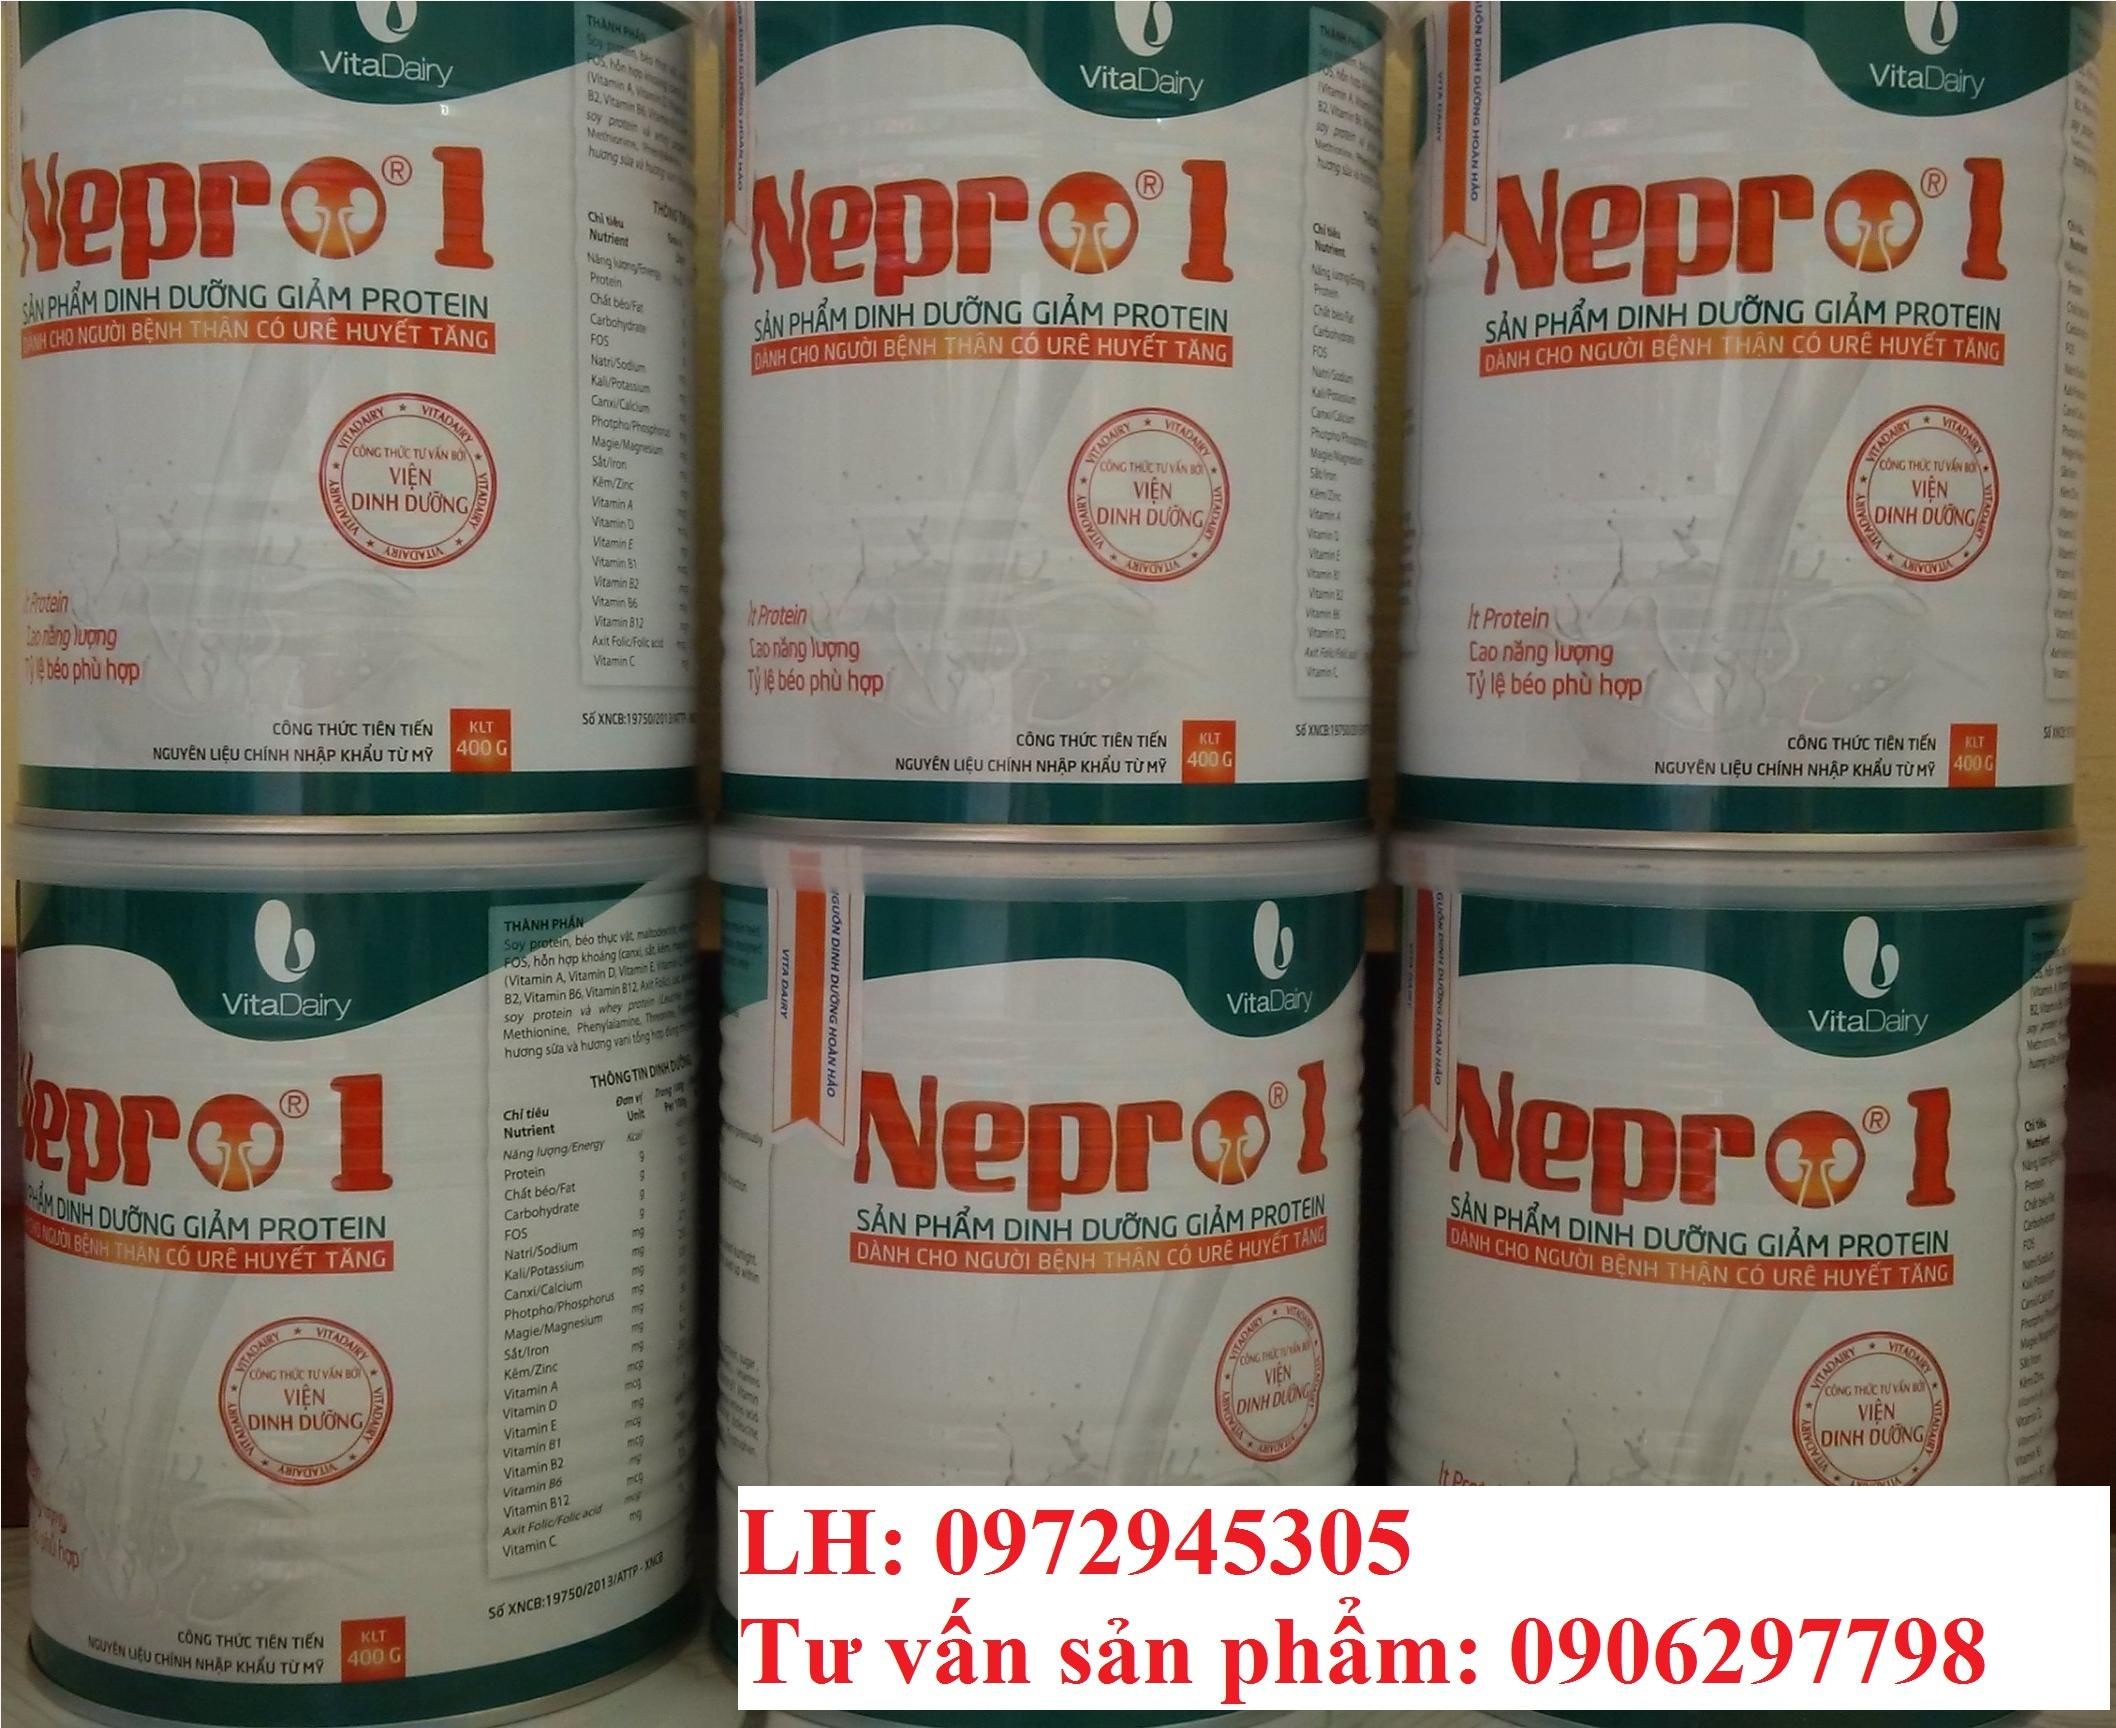 Sữa Nepro 1 cho bệnh nhân suy thận